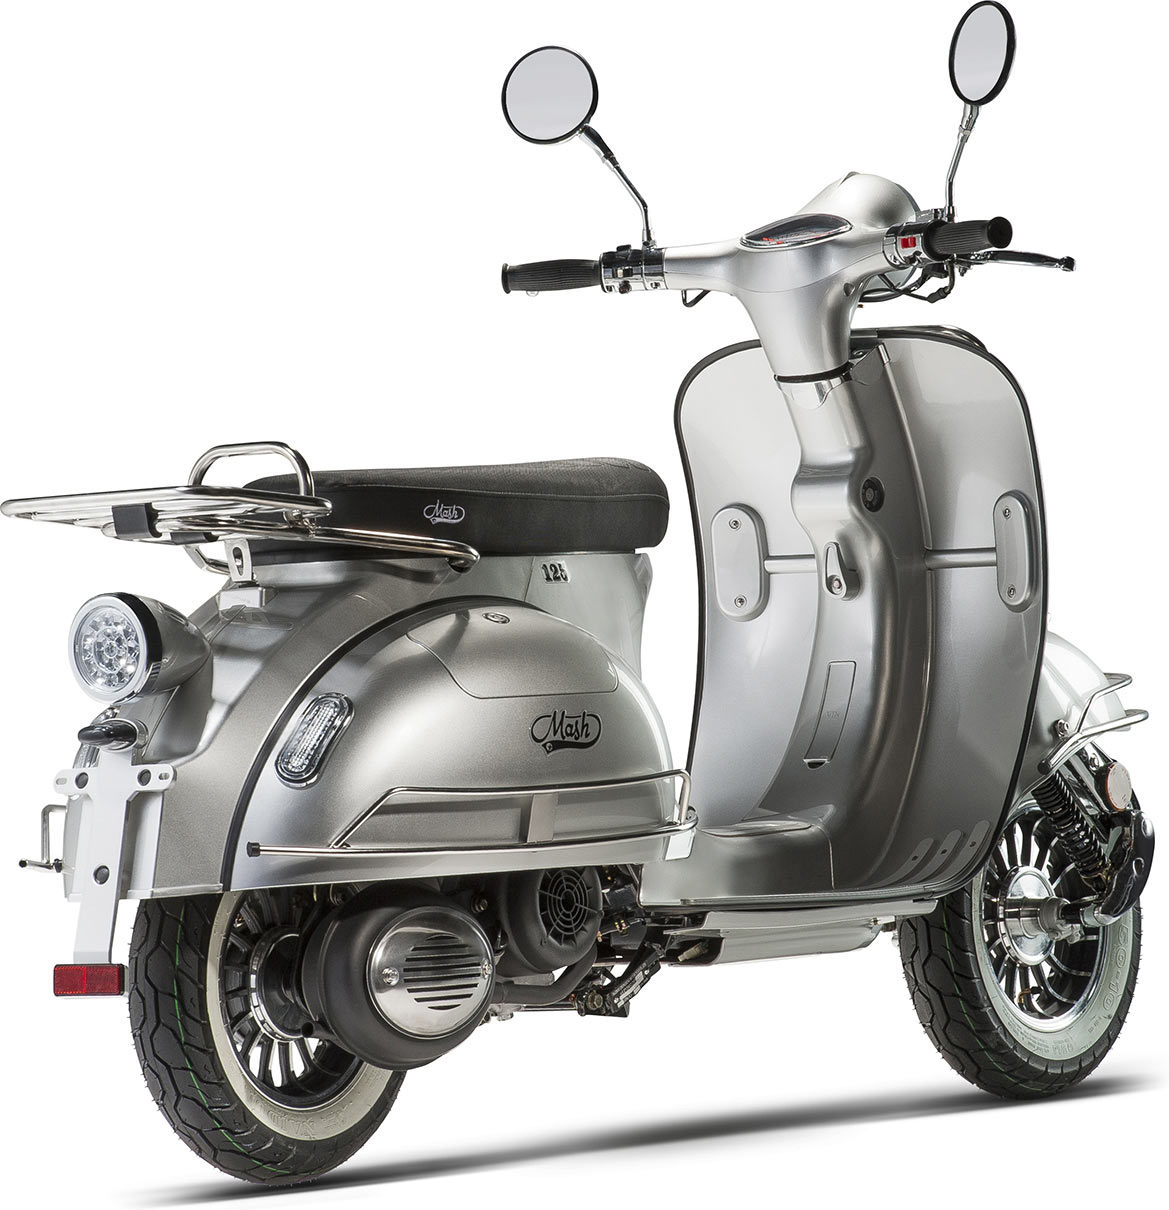 Le scooter rétro est décliné en coloris noir, blanc et gris Silver (comme ici)